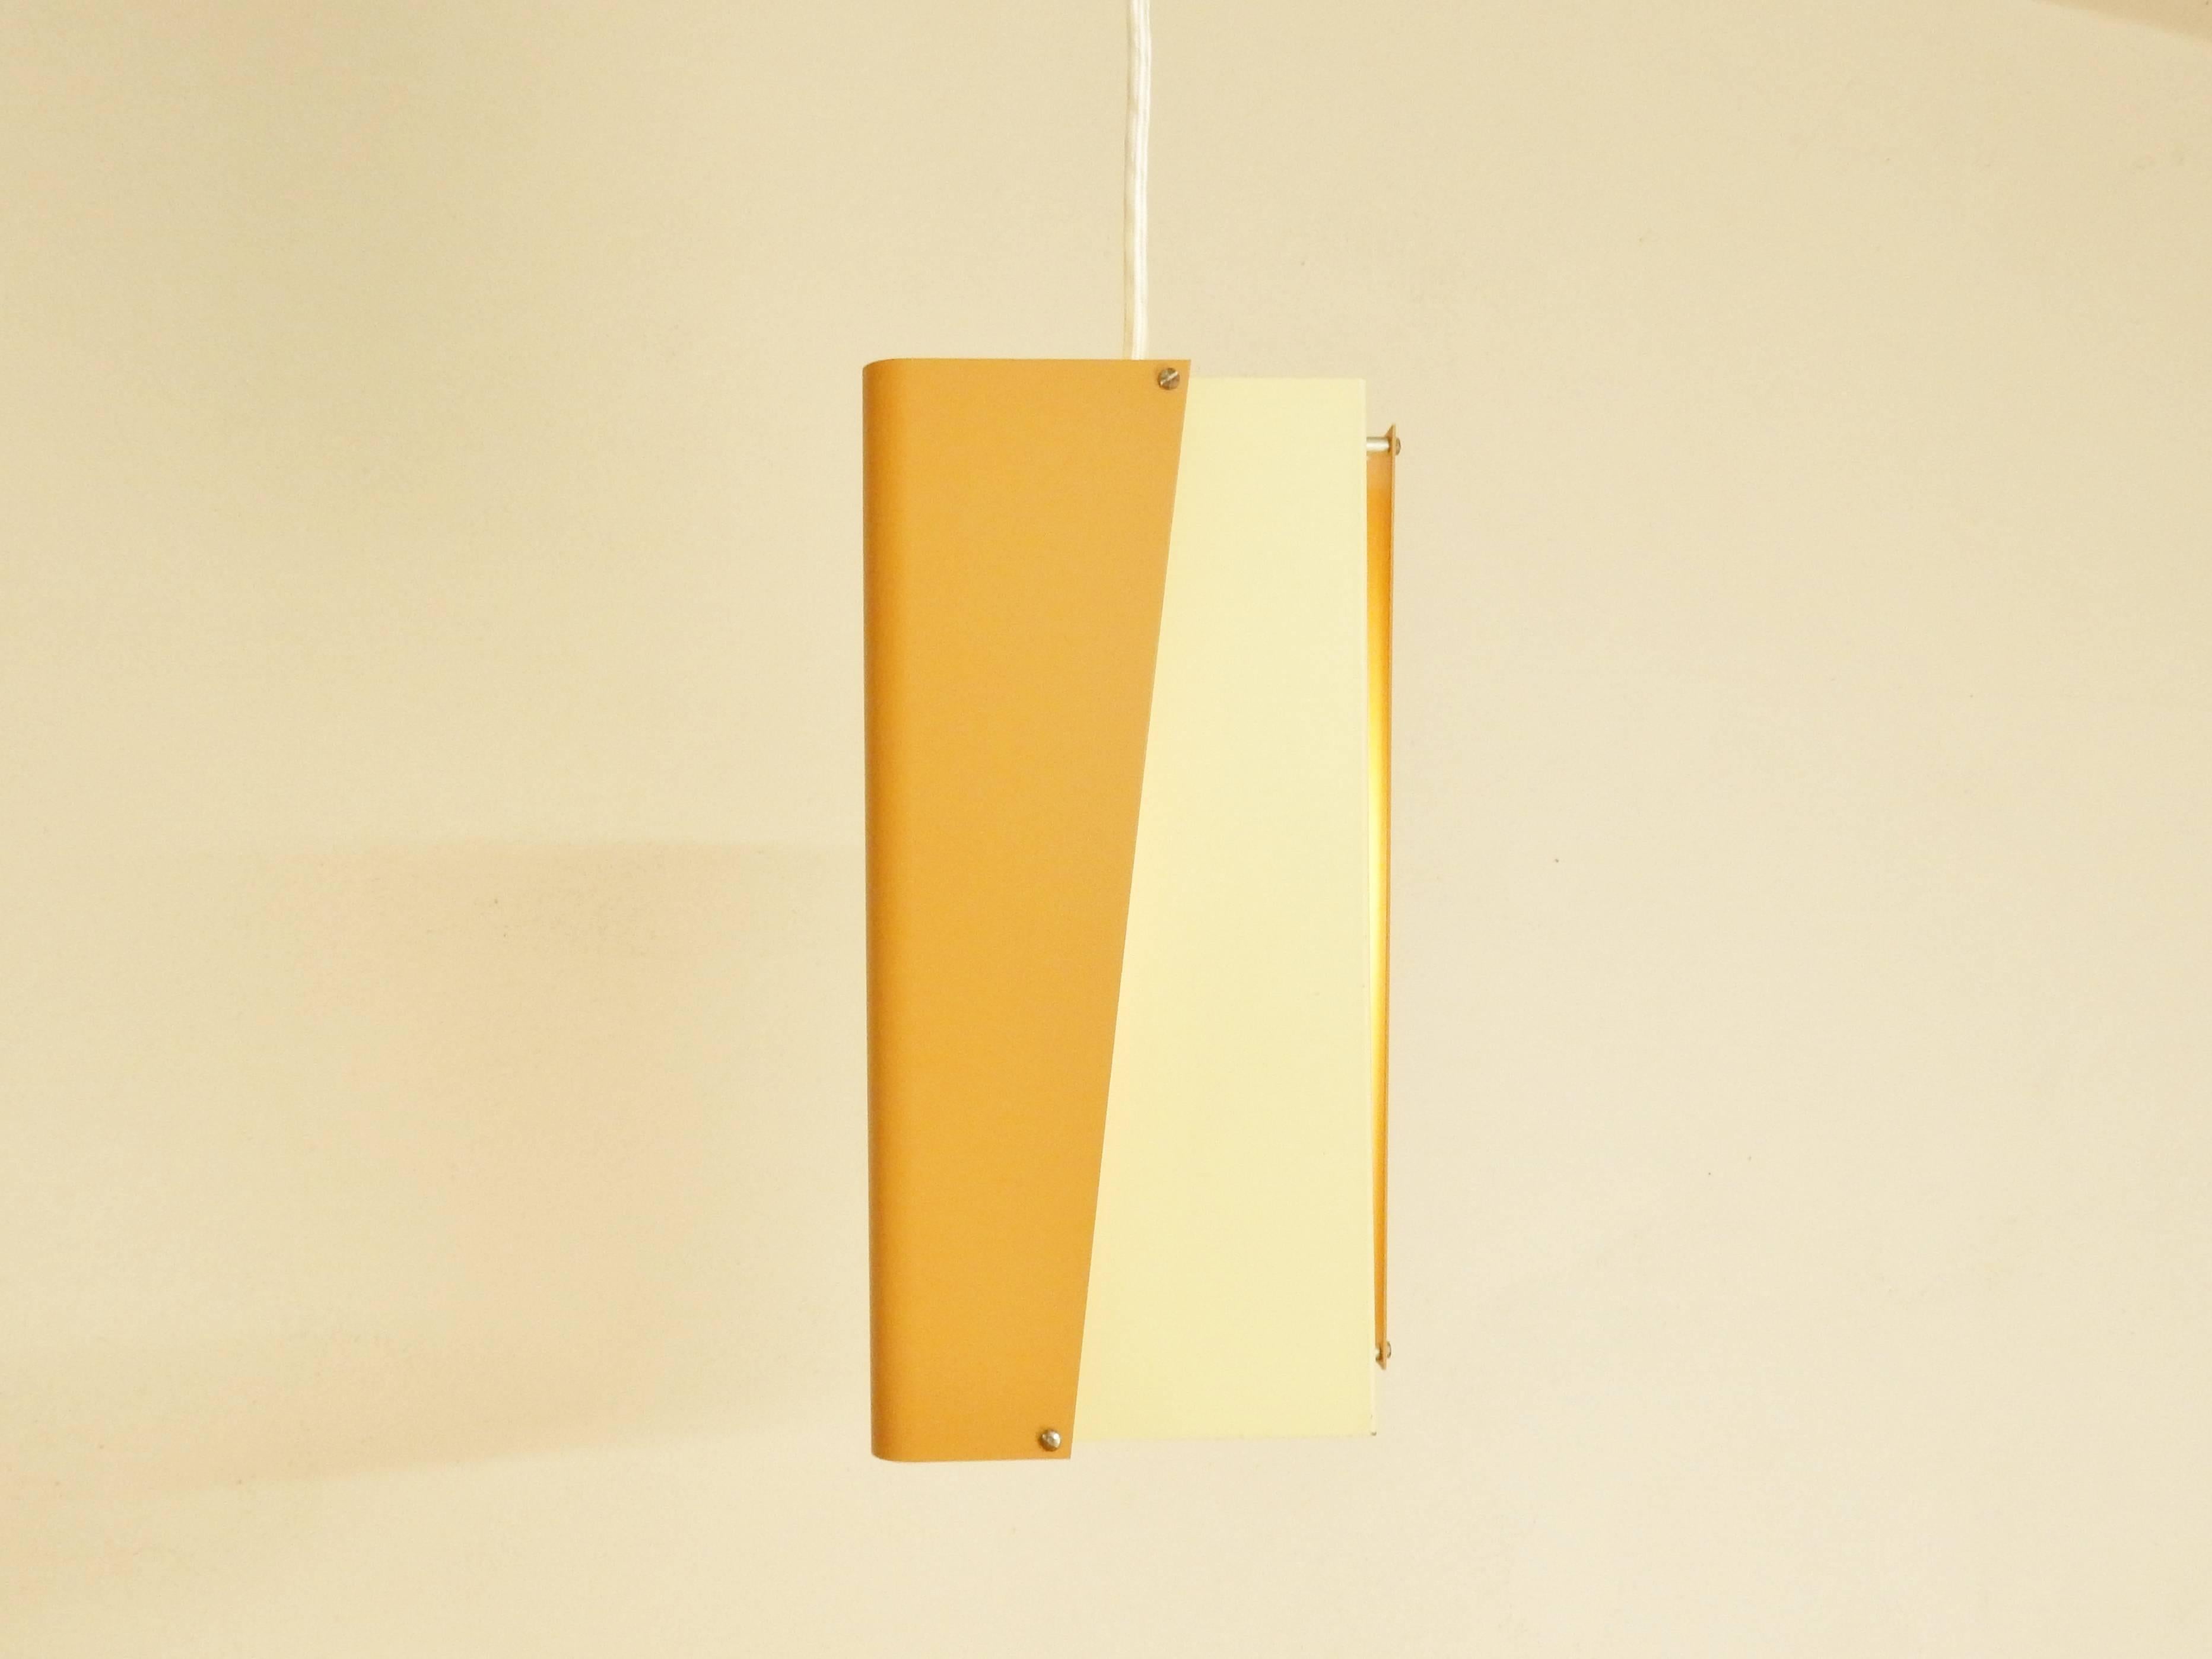 Lampe pendante de couleur orange et crème ou blanc cassé du fabricant danois de luminaires Lyfa. Cette lampe est un modèle rare qui n'est pas beaucoup offert. Un arrangement de 4 feuilles de métal pliées et laquées en couleur. La lampe est étiquetée